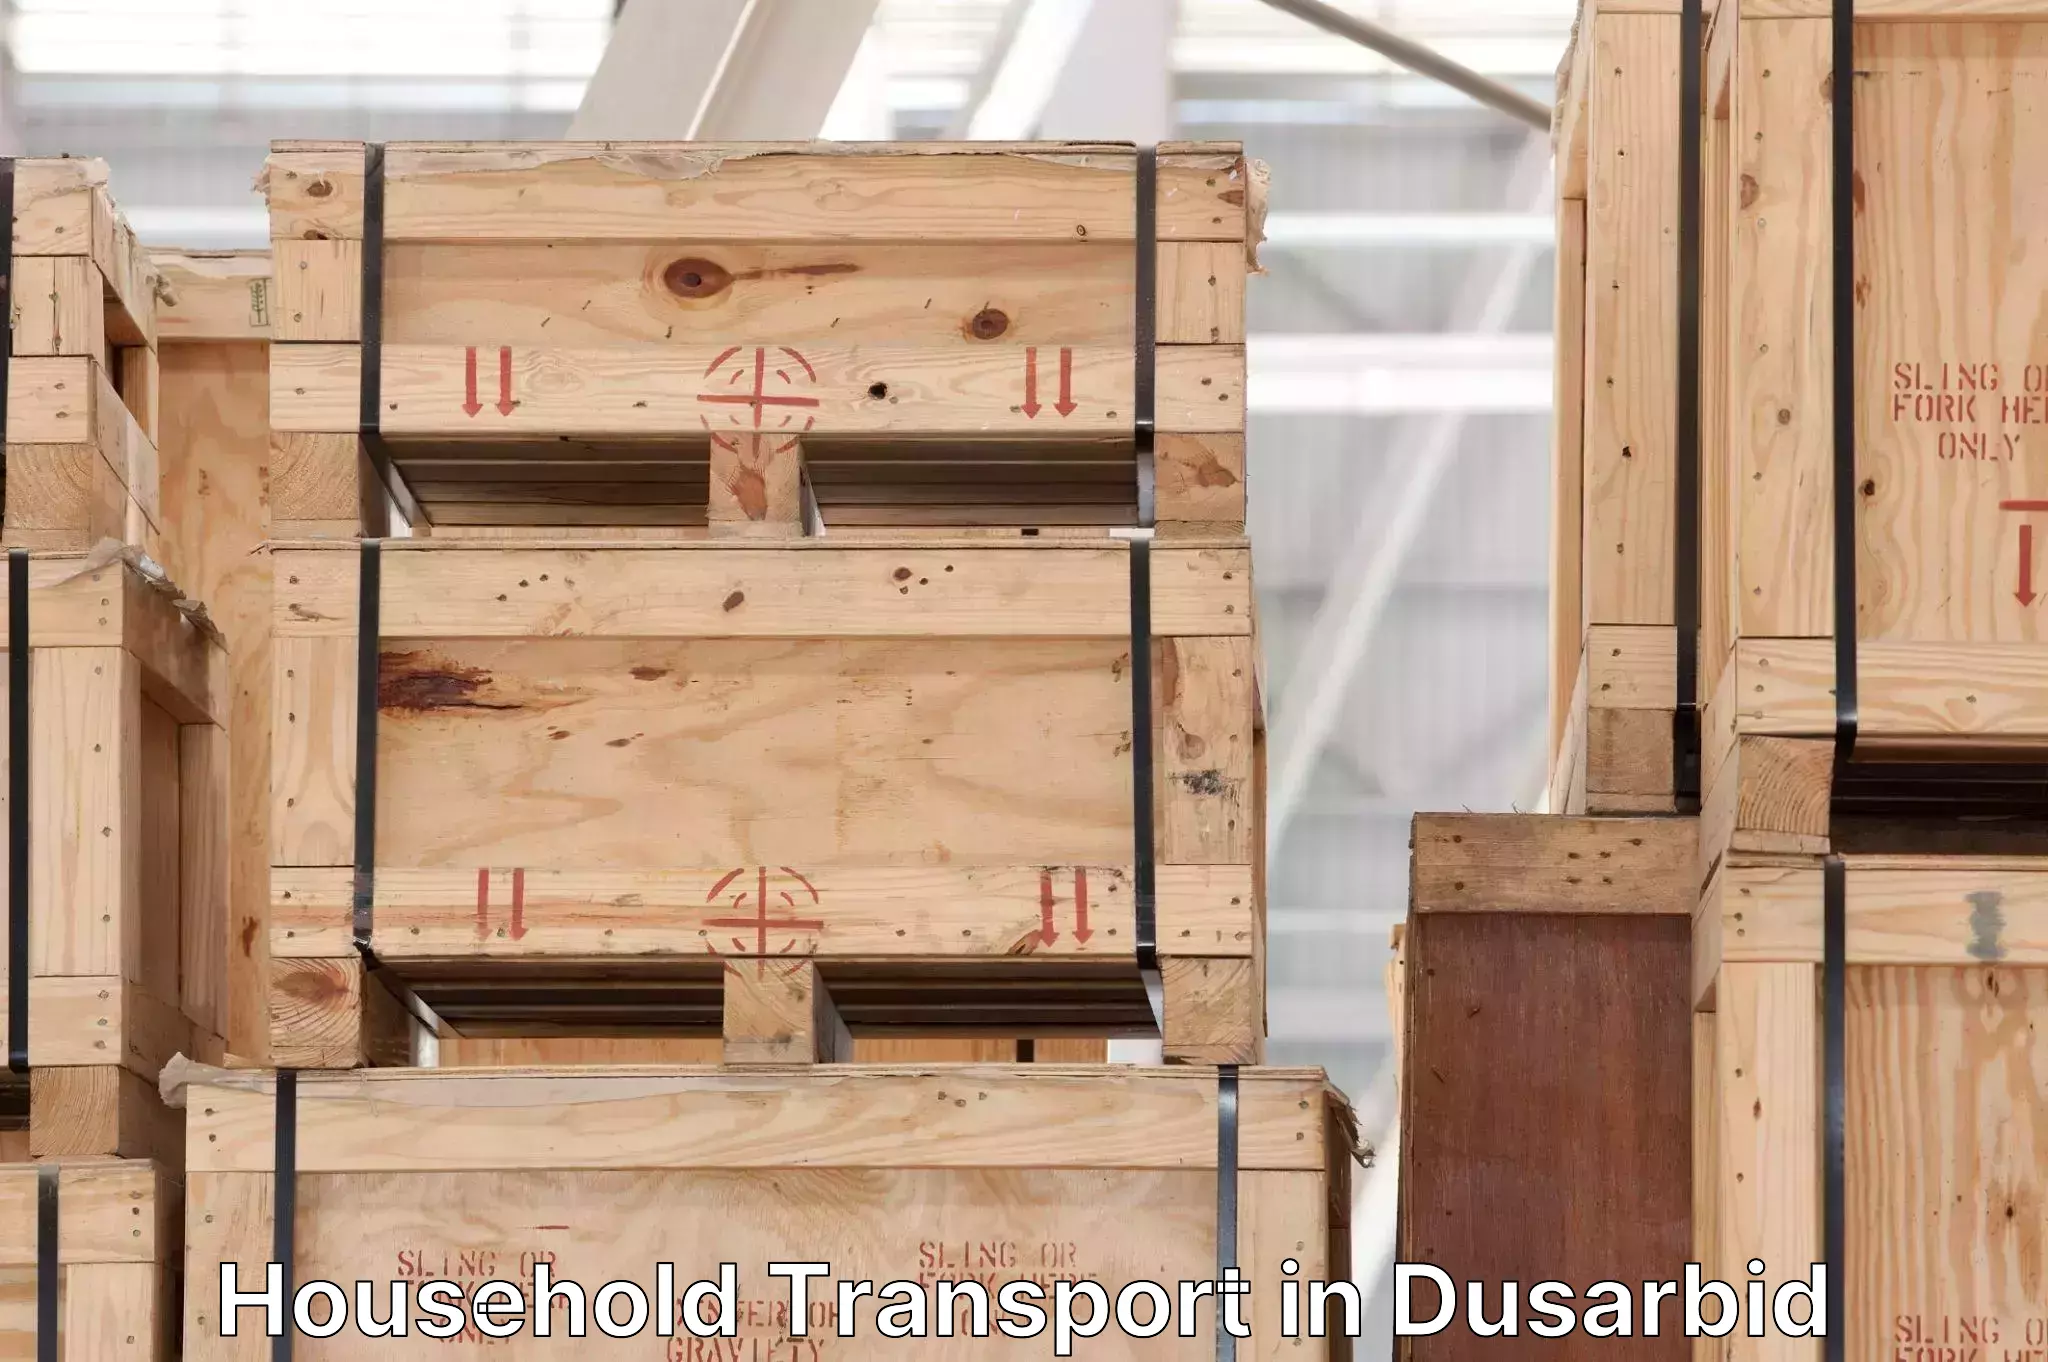 Furniture handling services in Dusarbid